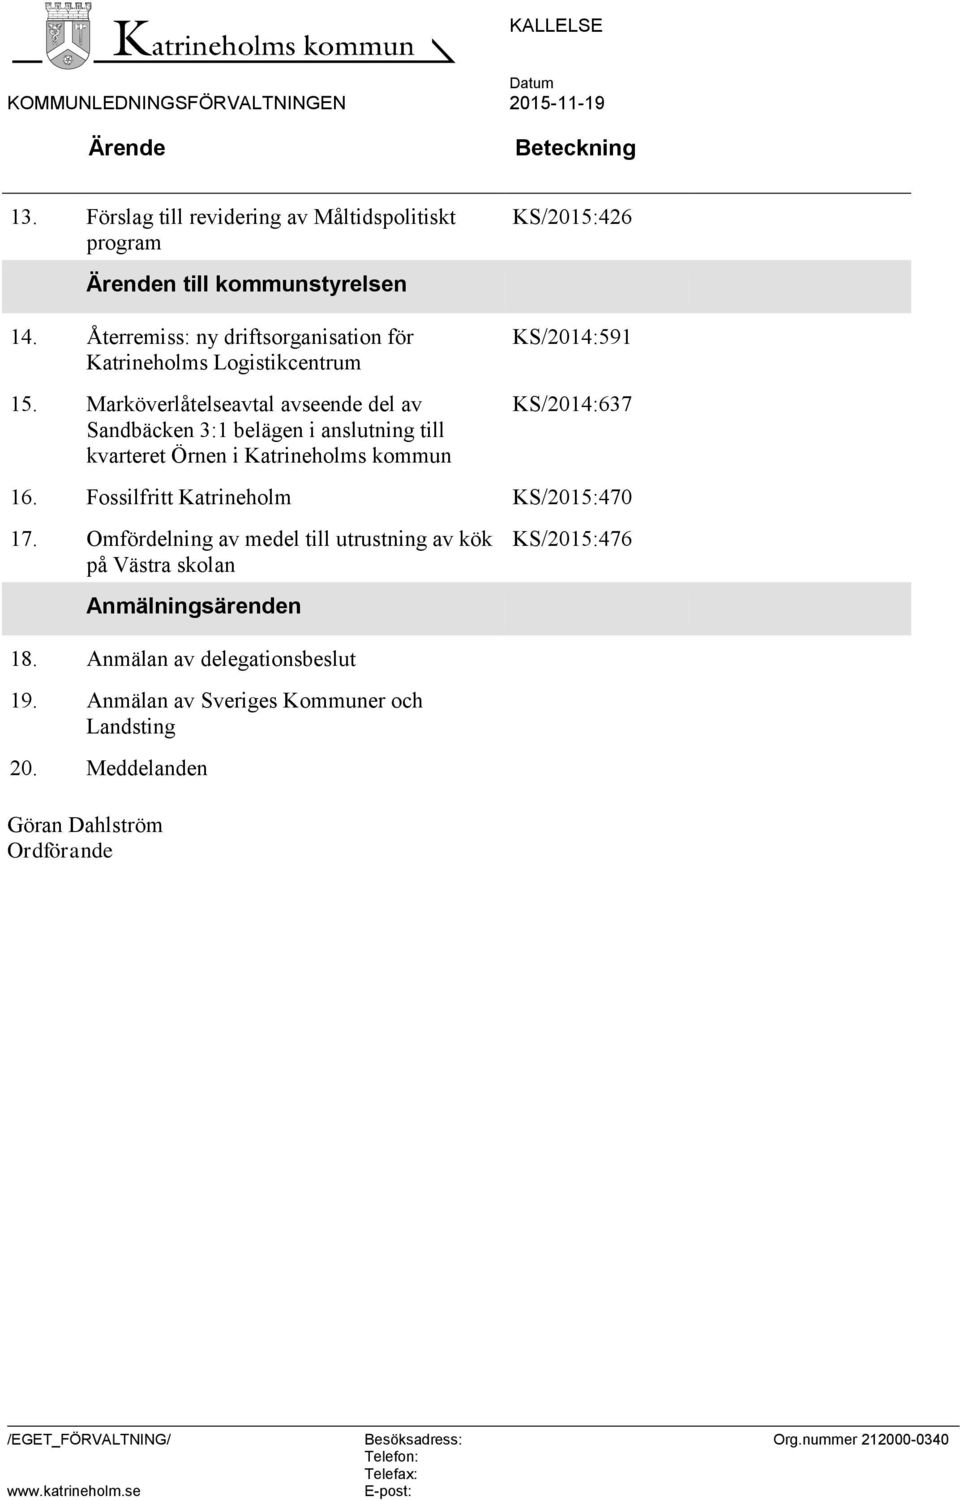 Marköverlåtelseavtal avseende del av Sandbäcken 3:1 belägen i anslutning till kvarteret Örnen i Katrineholms kommun KS/2014:637 16. Fossilfritt Katrineholm KS/2015:470 17.